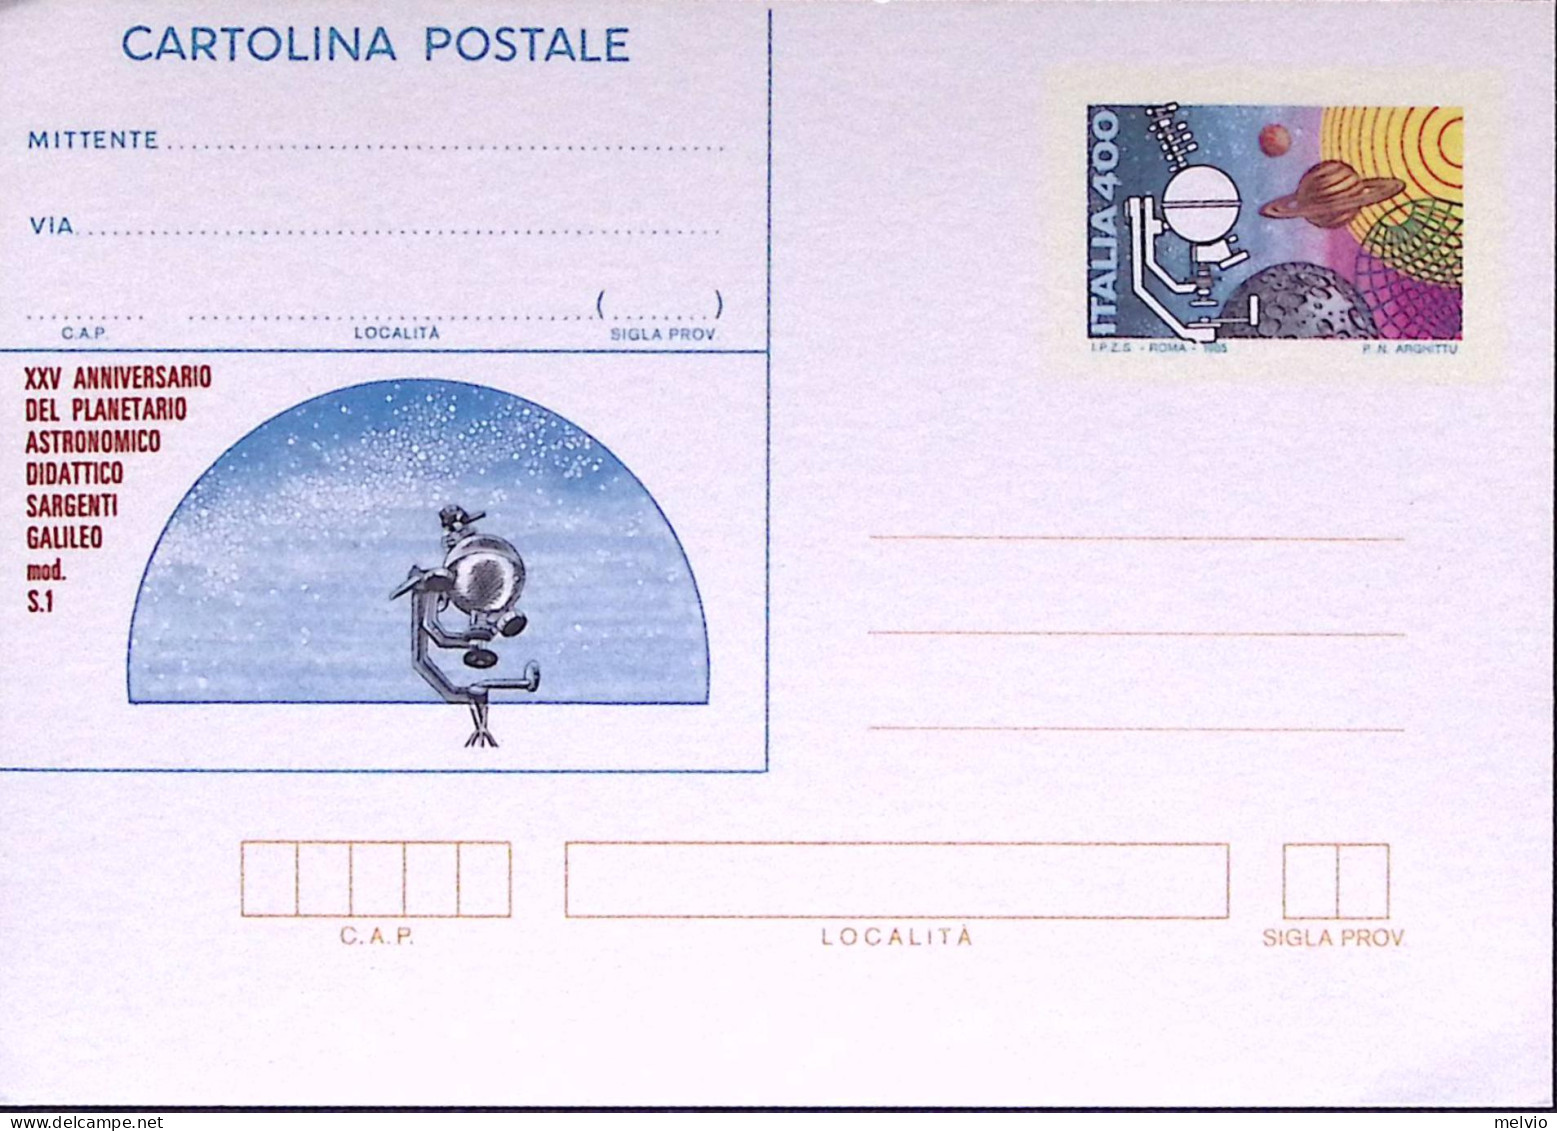 1985-Cartolina Postale Lire 400 Umbriaphil Nuova - Stamped Stationery